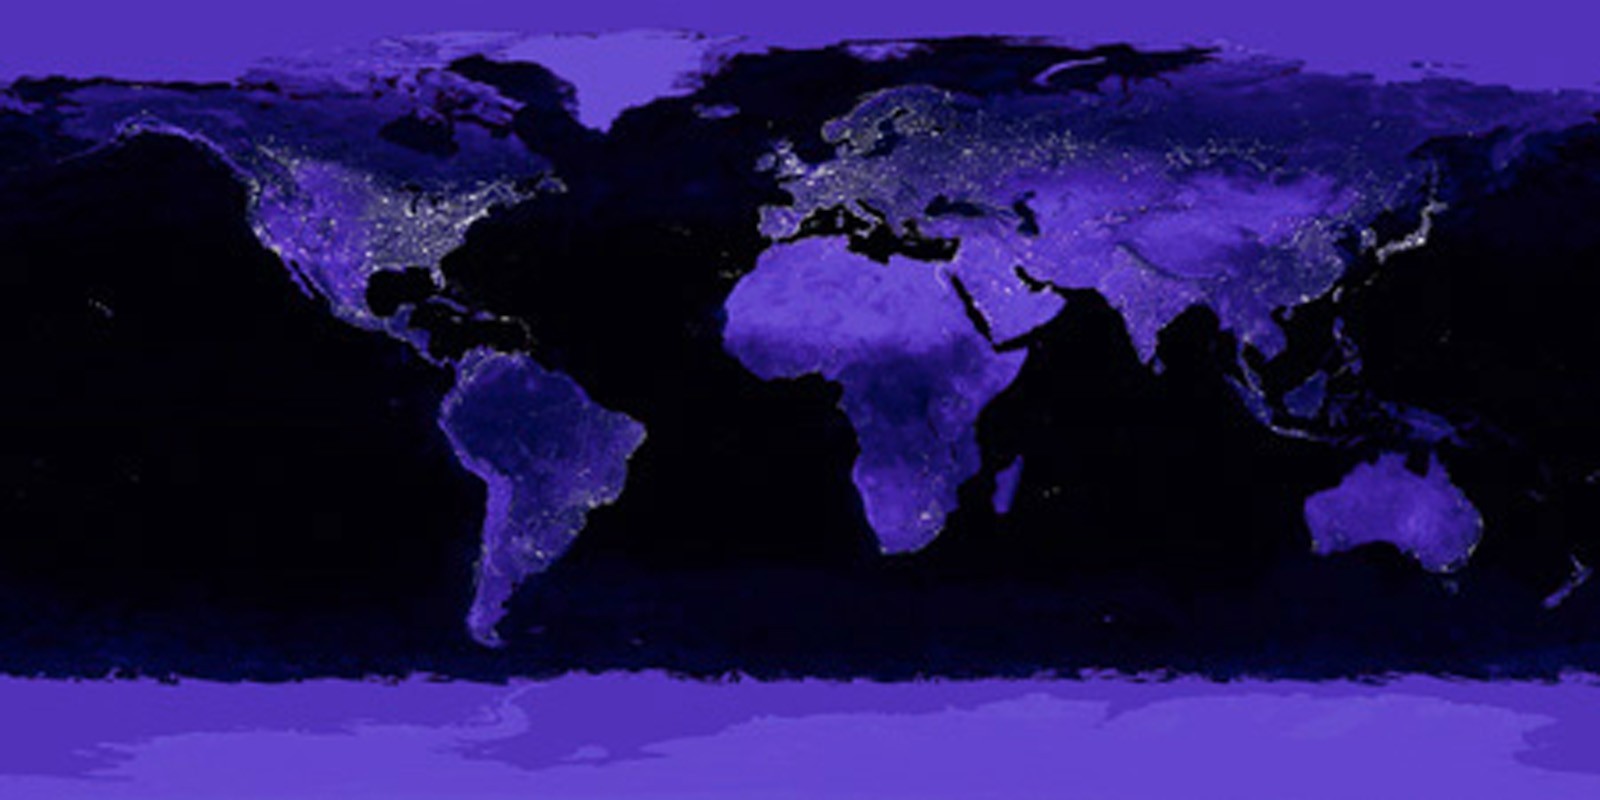 NASA - Earth at Night